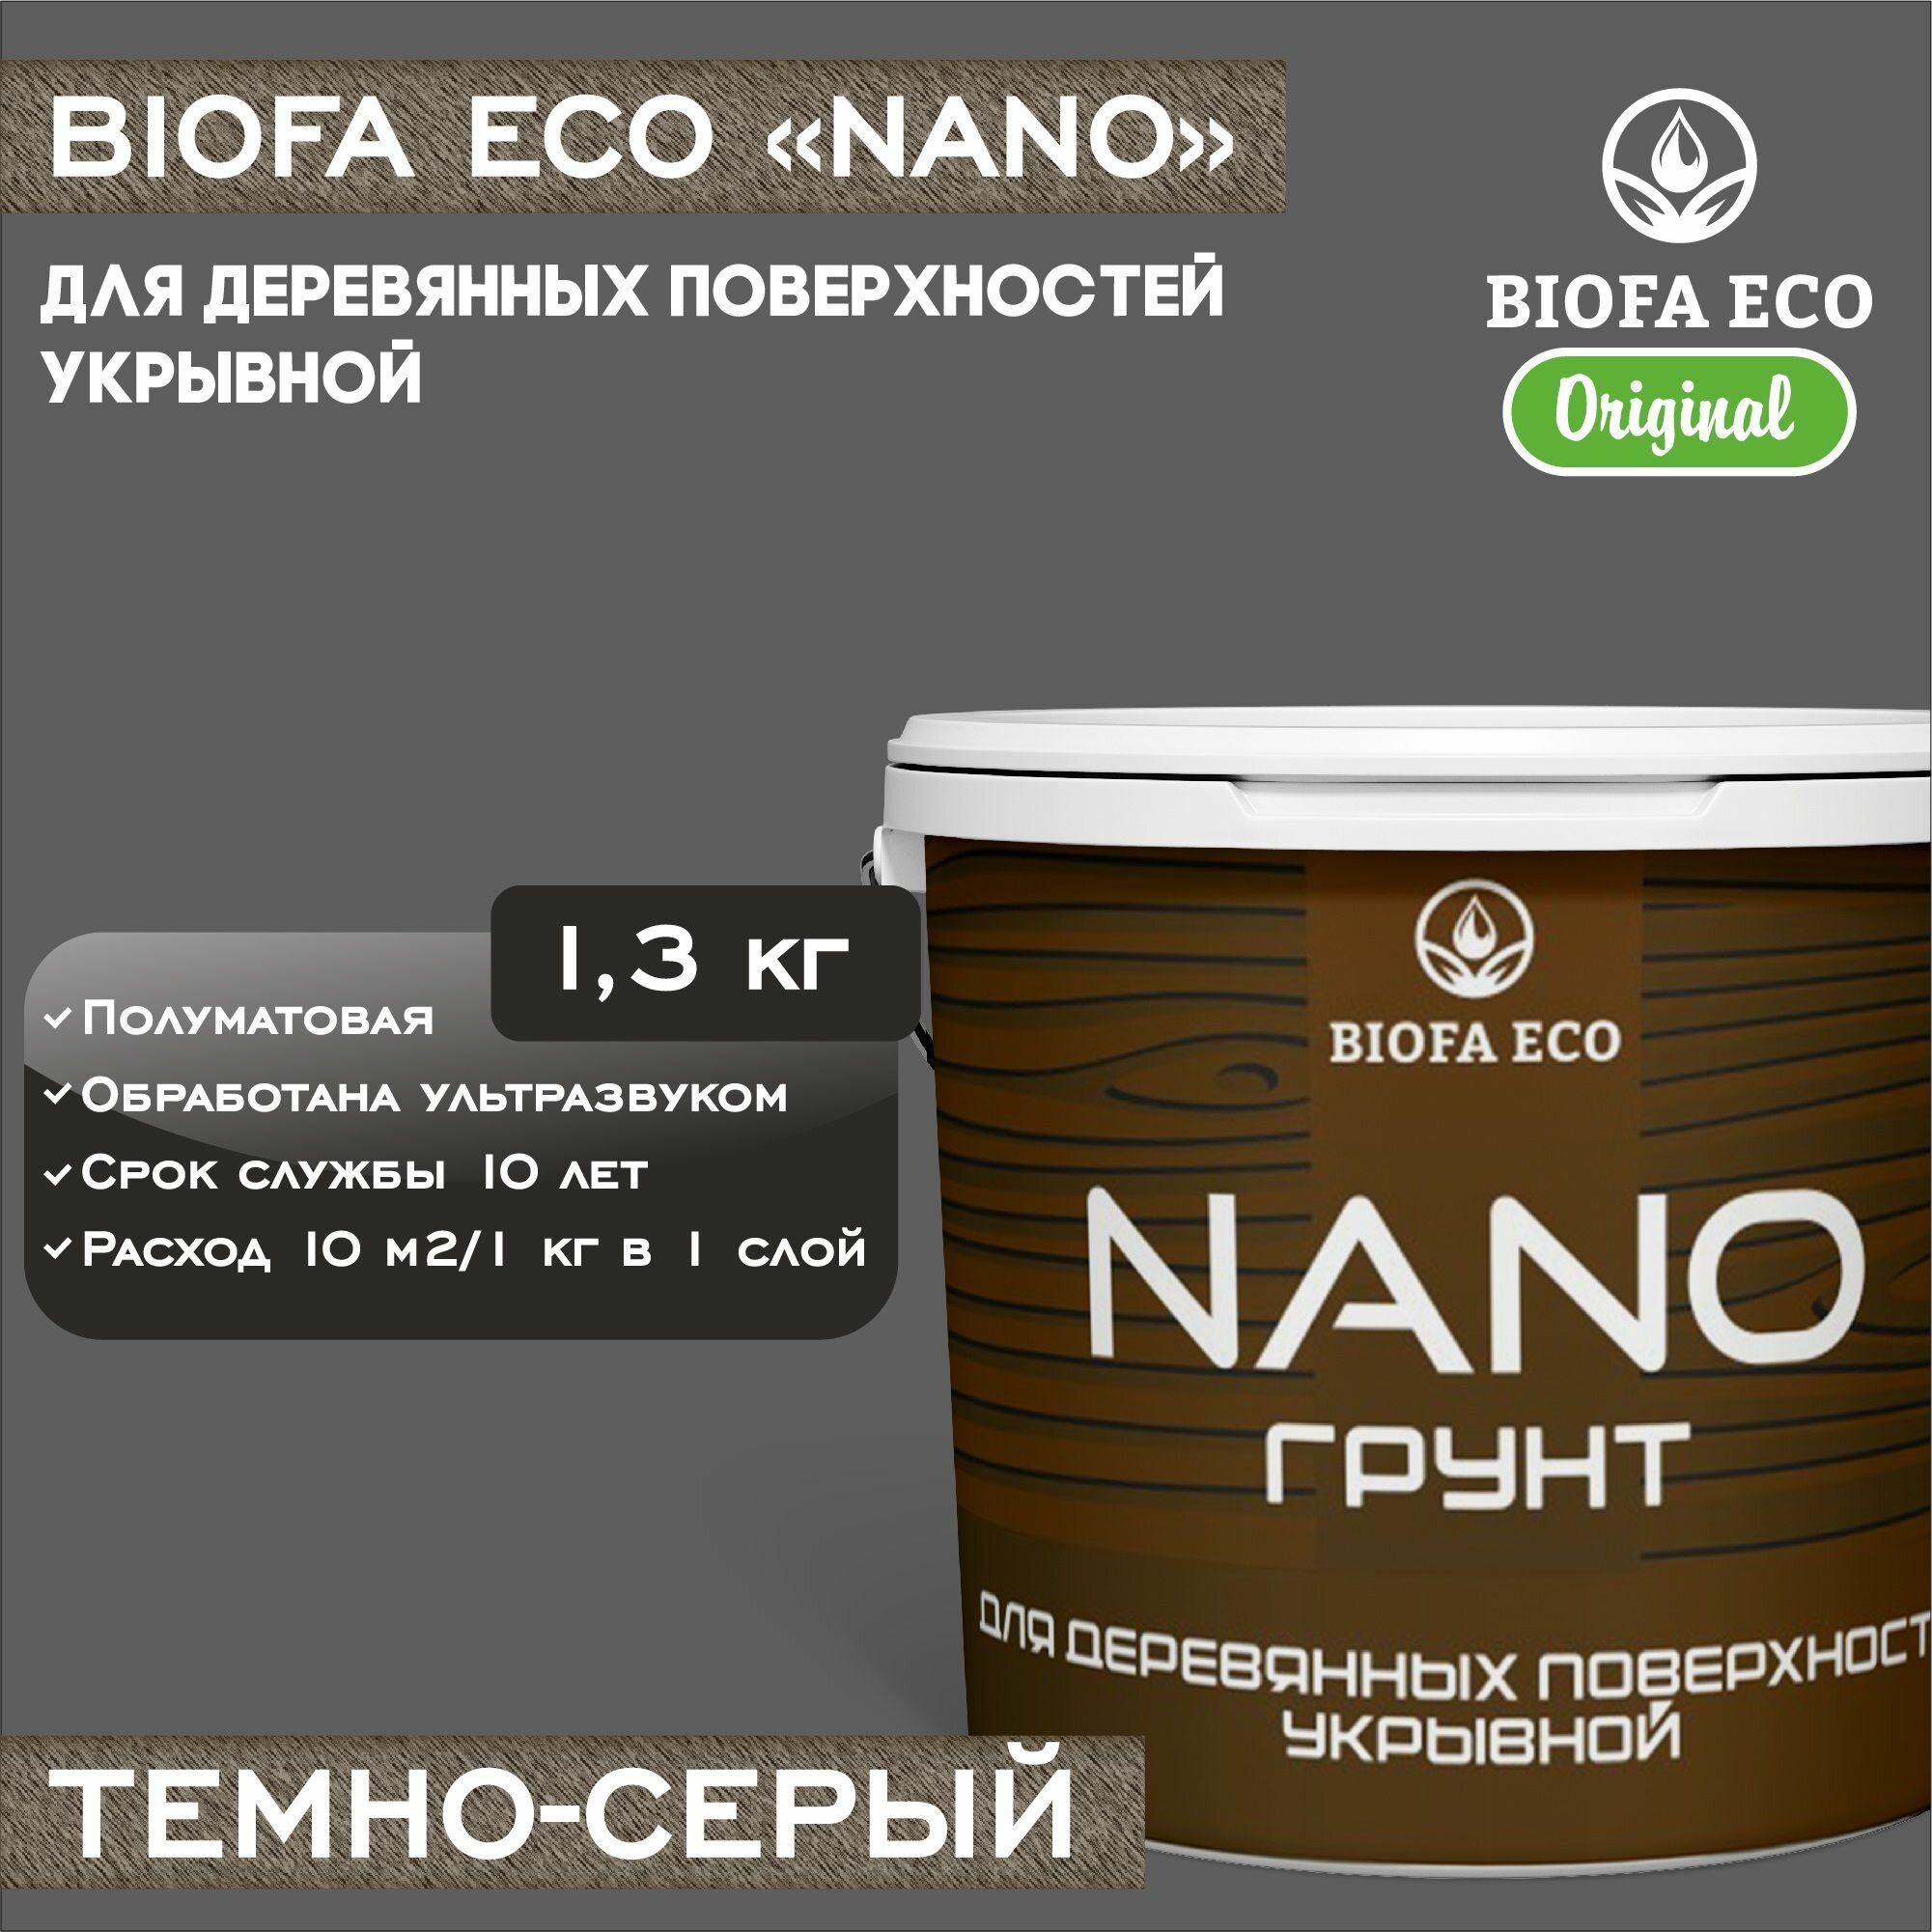 Грунт-краска BIOFA ECO NANO для деревянных поверхностей, укрывной, цвет темно-серый, 1,3 кг